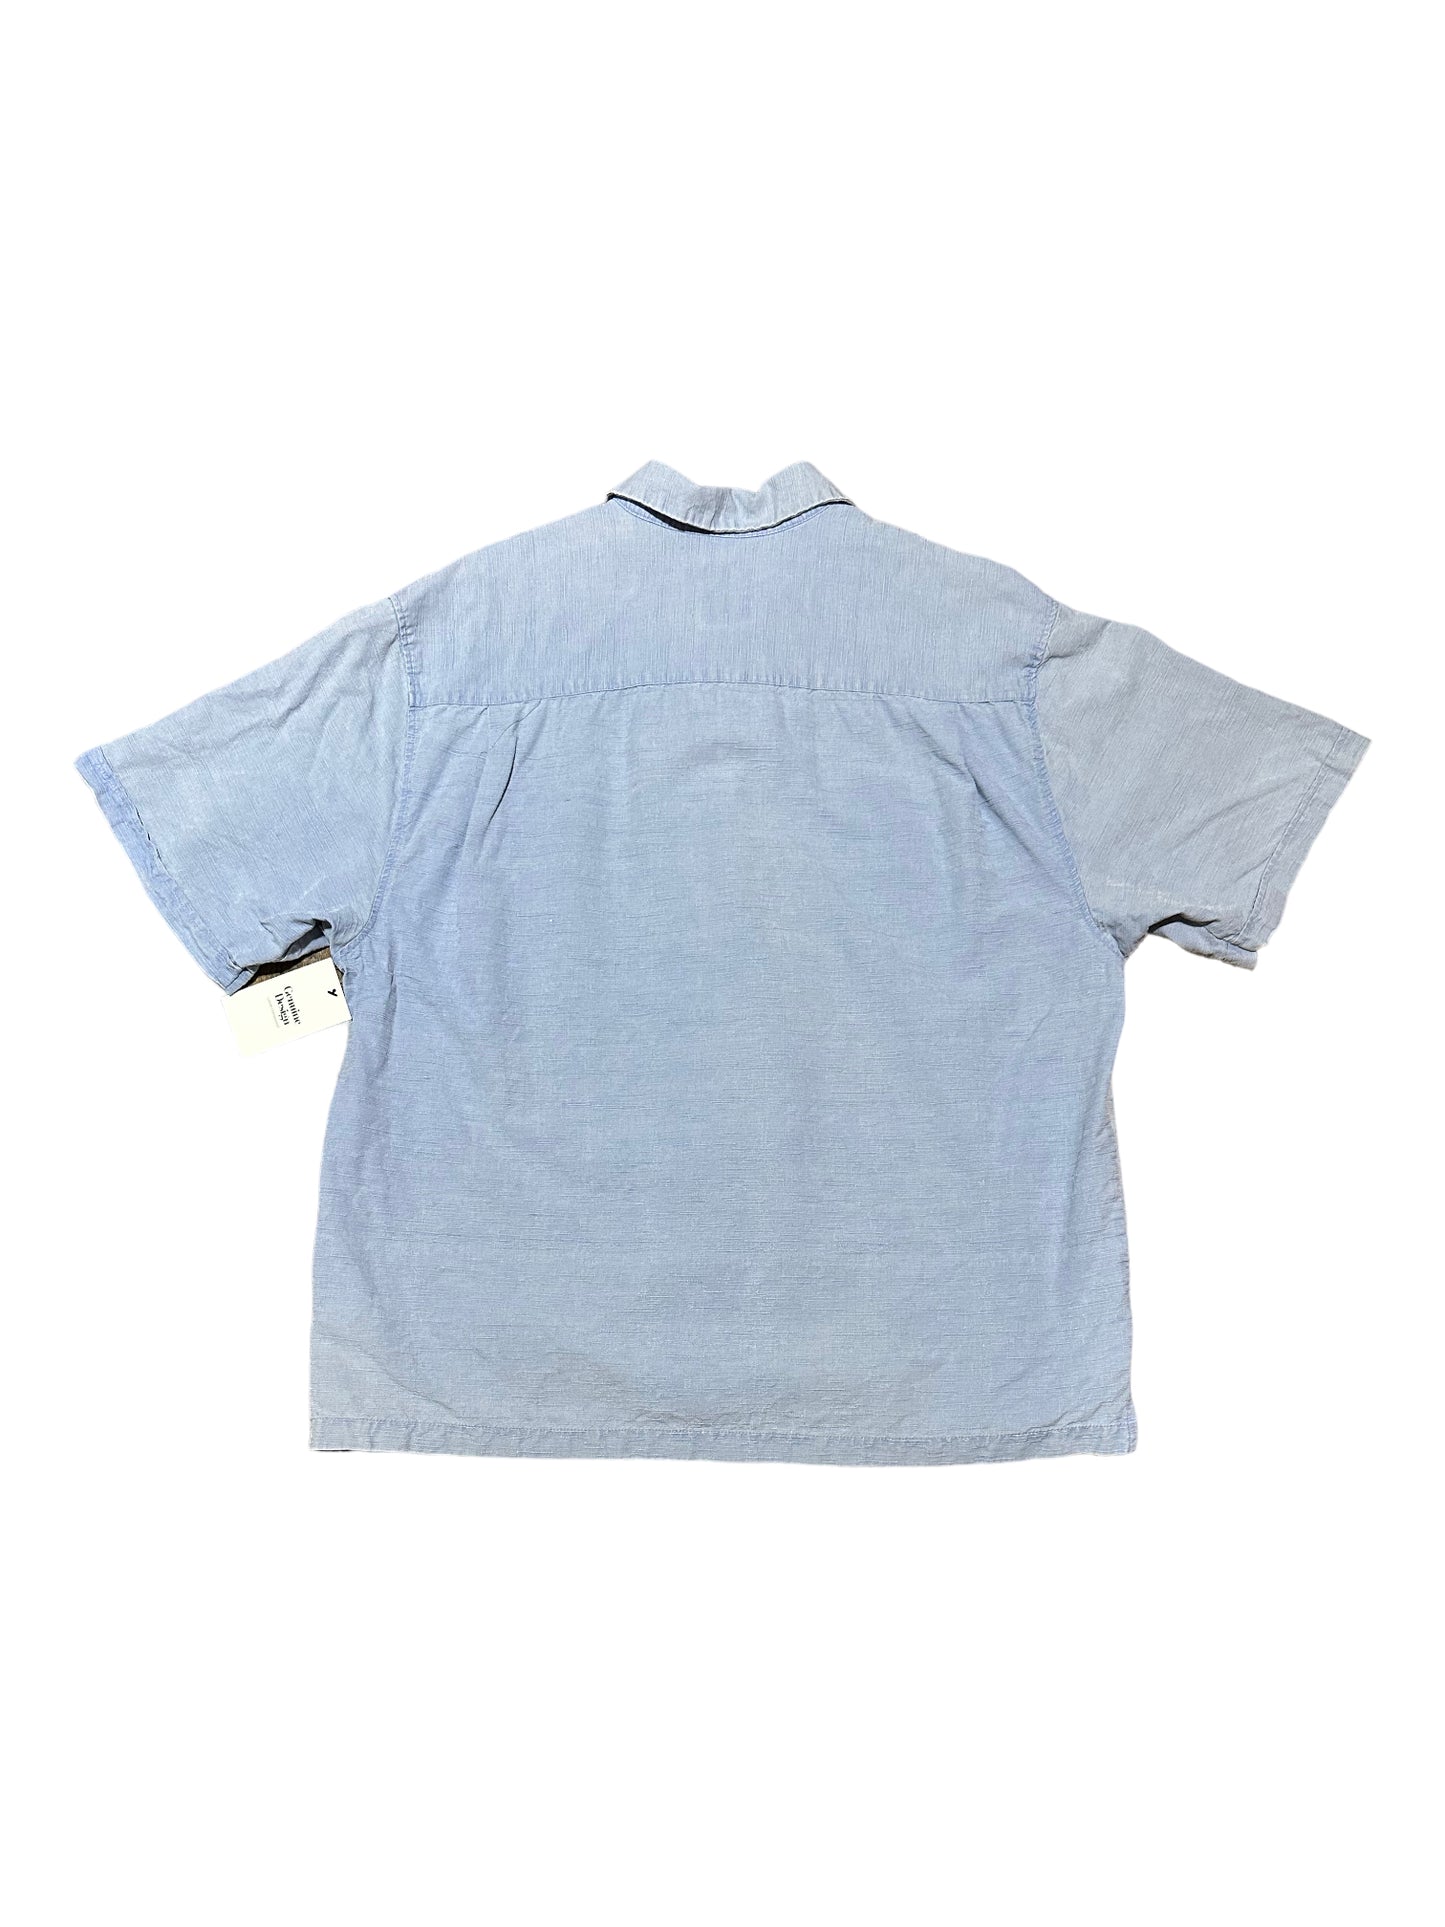 Jamaica Jaxx Sky Blue Patterned Silk Button Up Short Sleeve Casual Shirt